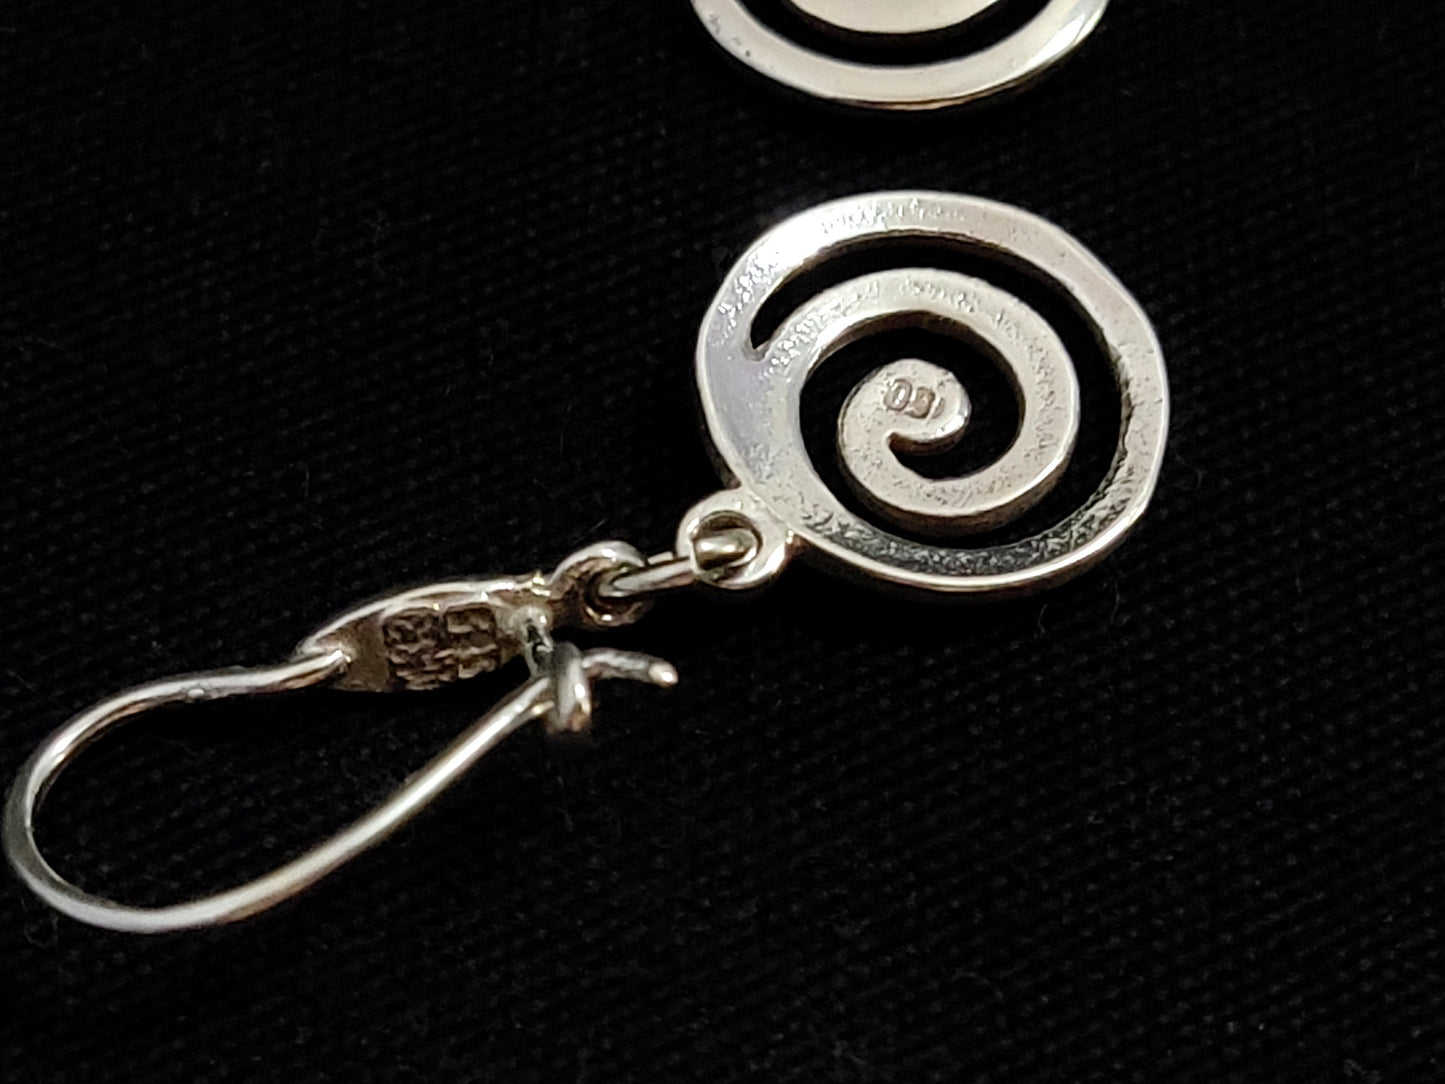 Sterling Silver 925 Greek Spiral Swirl Vortex Dangle Earrings 12mm, Greek Silver Spiral Earrings, Greek Jewelry, Griechische Silber Ohrringe